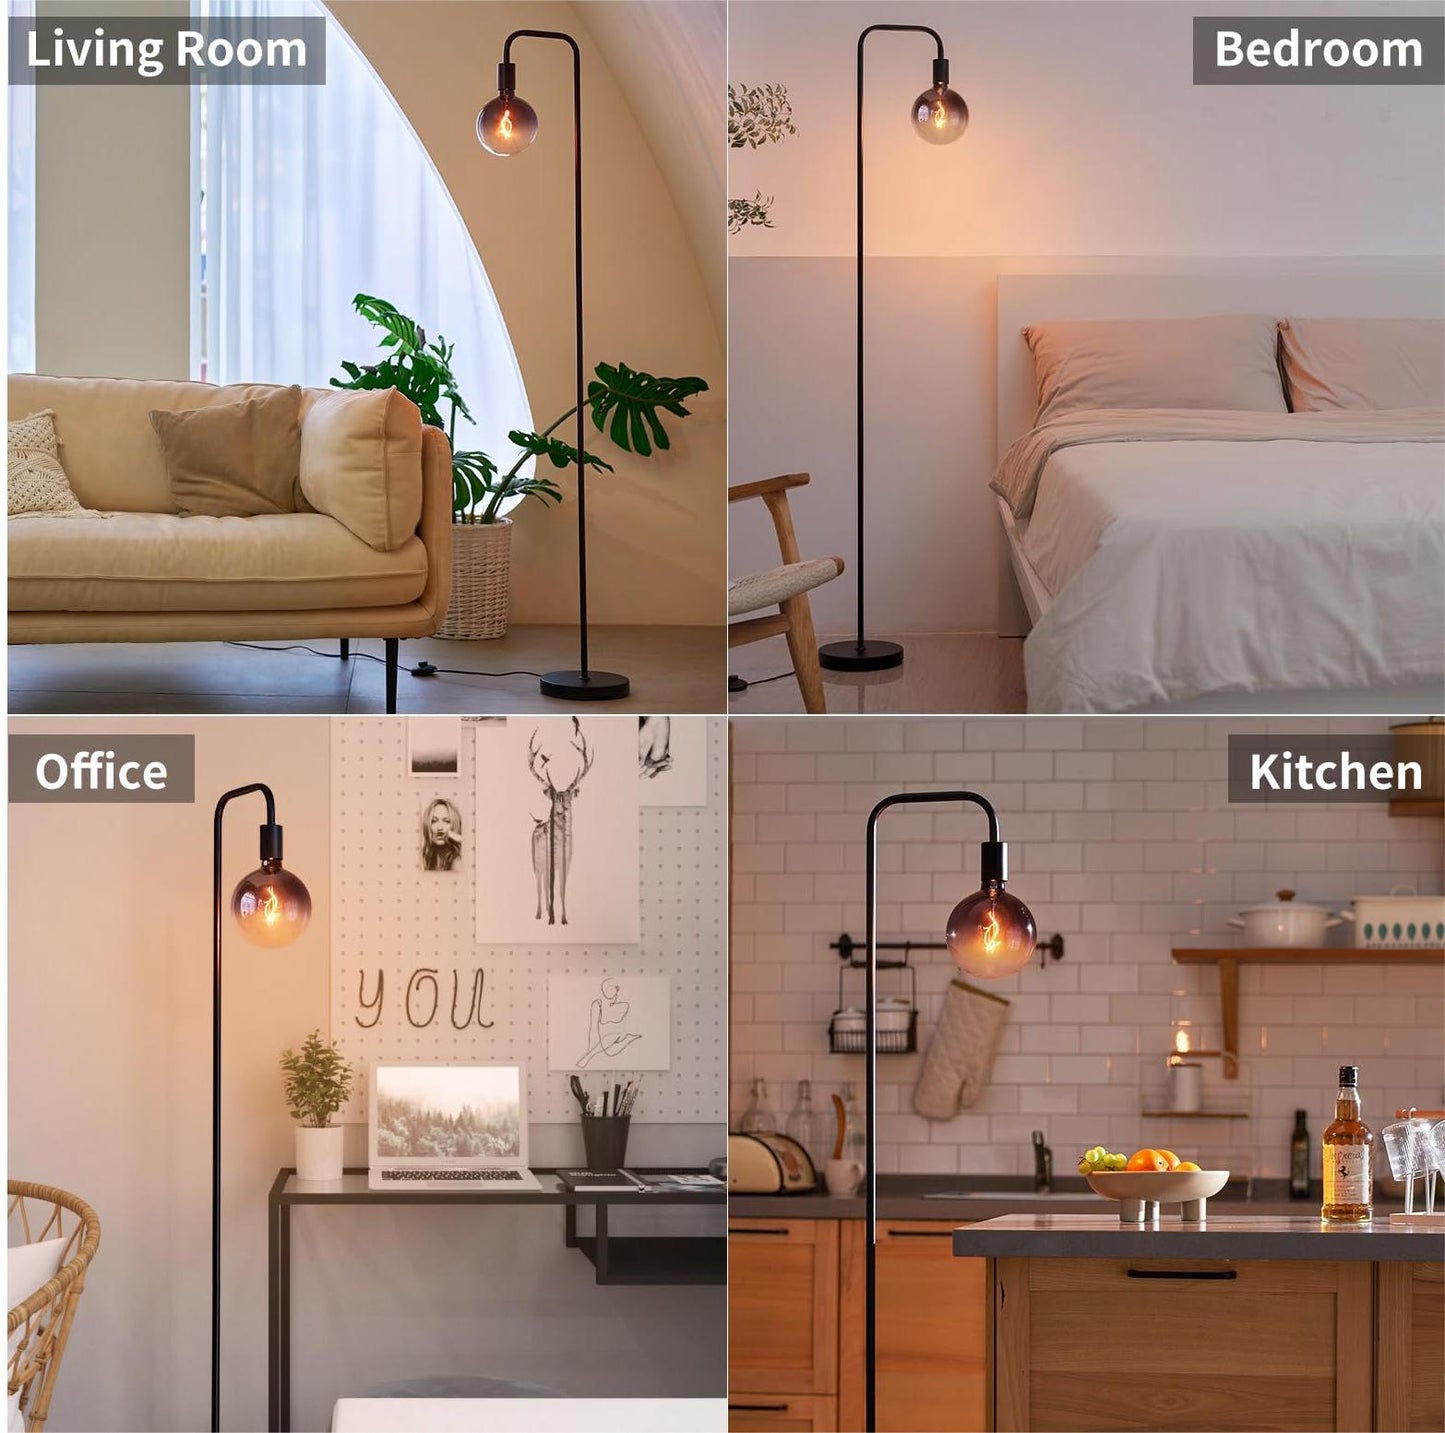 ONEWISH Floor Lamp Set in Living Room Bedroom Office Kitchen